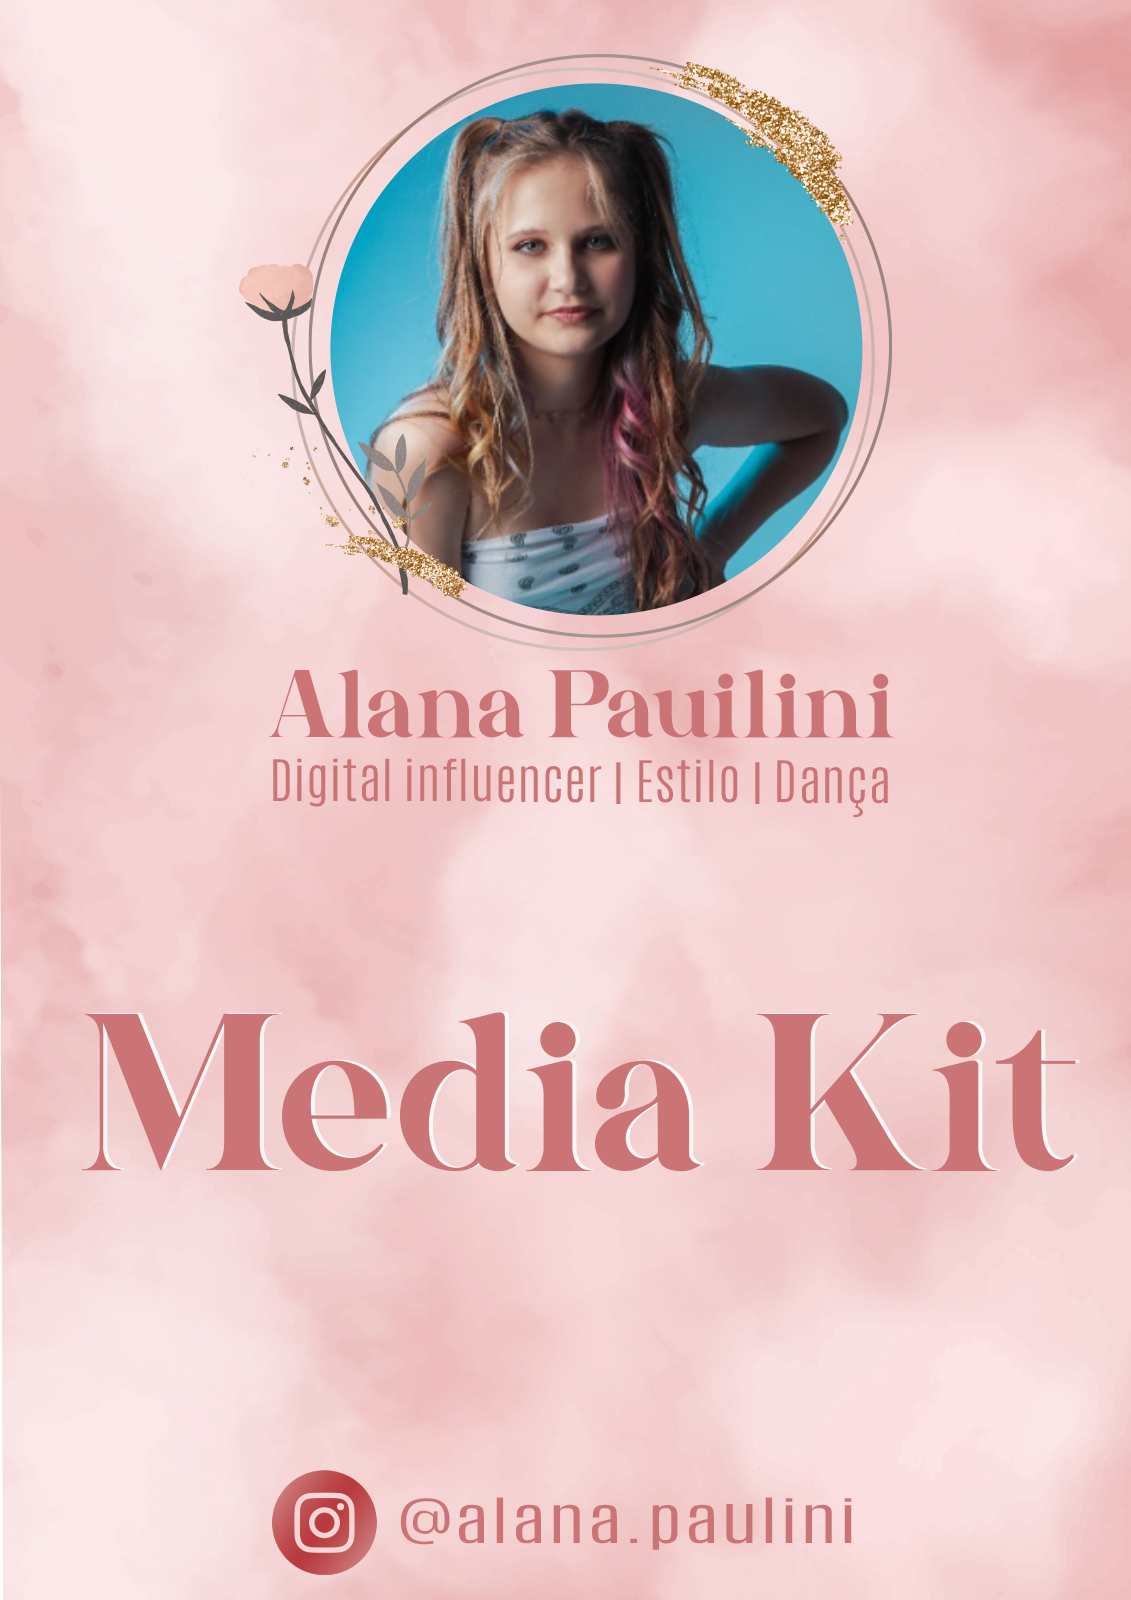 Alana Pauilini
Digital influencer | Estilo | Danca

Media Kit

© ealana.pauini